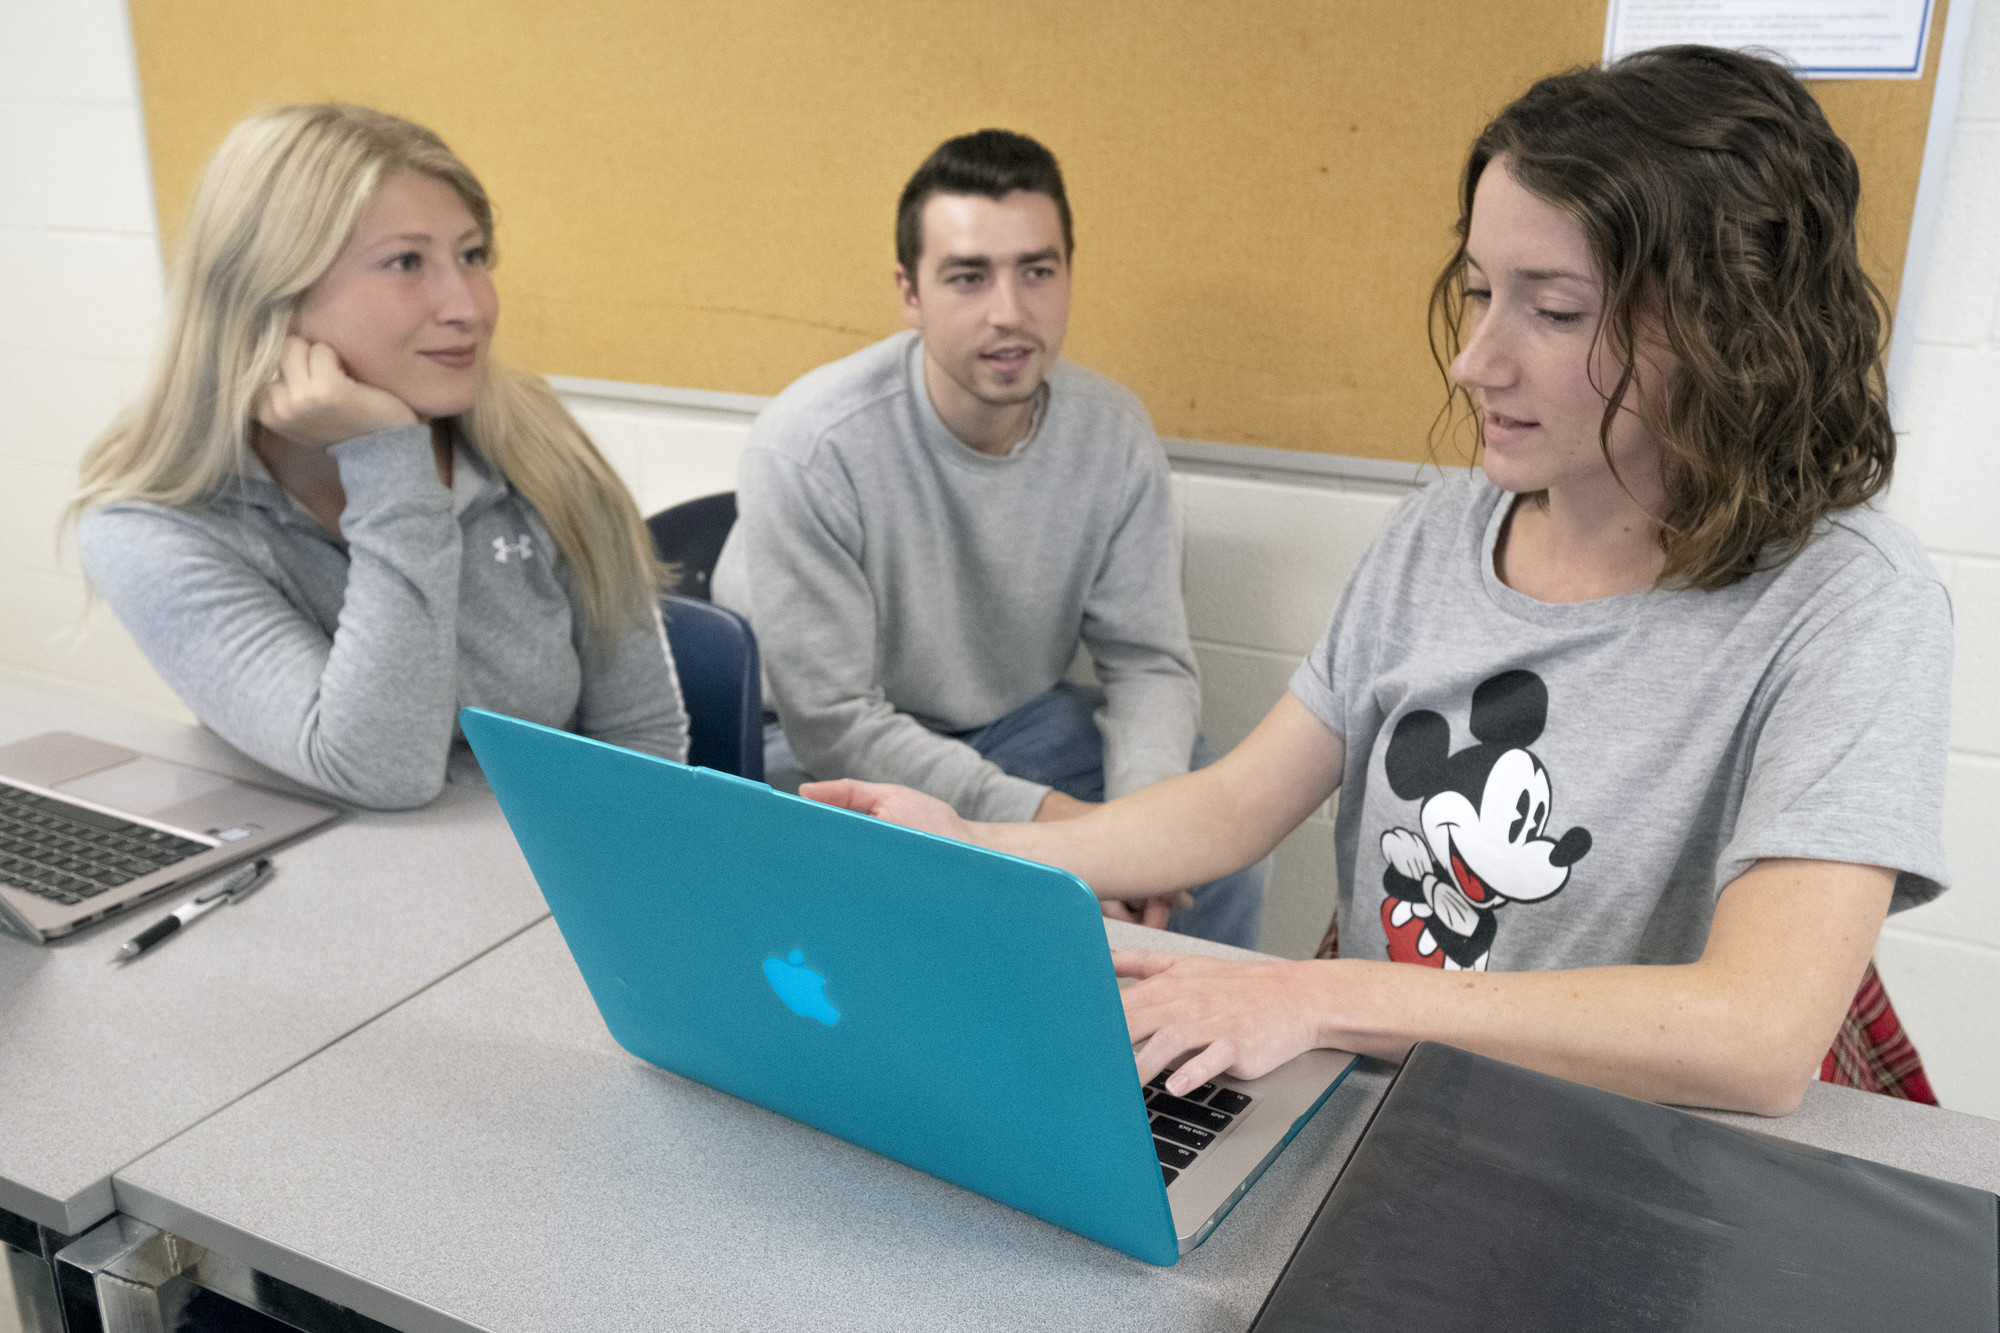 2名女学生和1名男学生坐在教室里用笔记本电脑工作